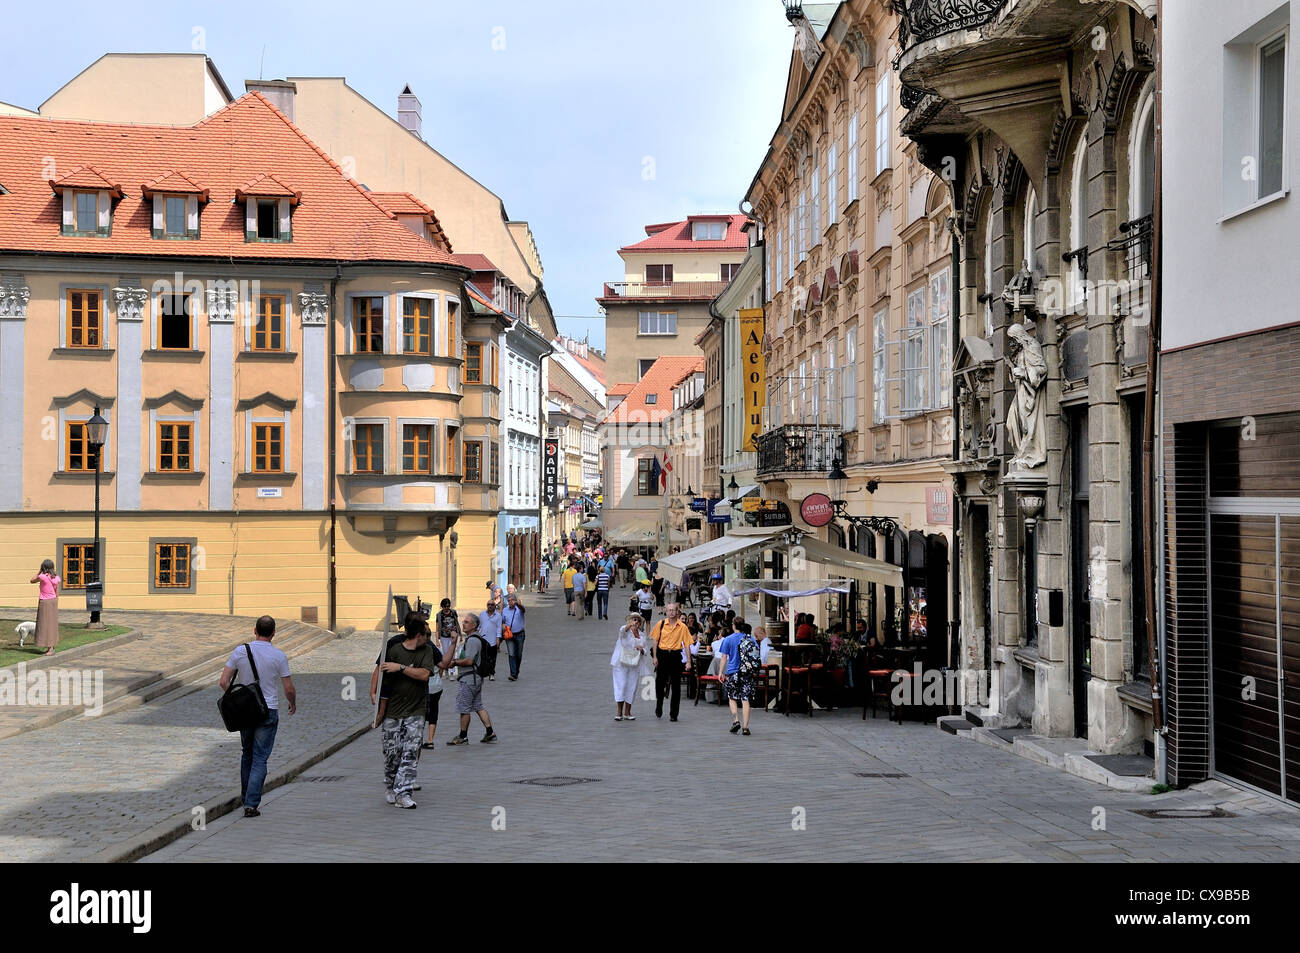 Panska street in the old town area of Bratislava Slovakia Stock Photo